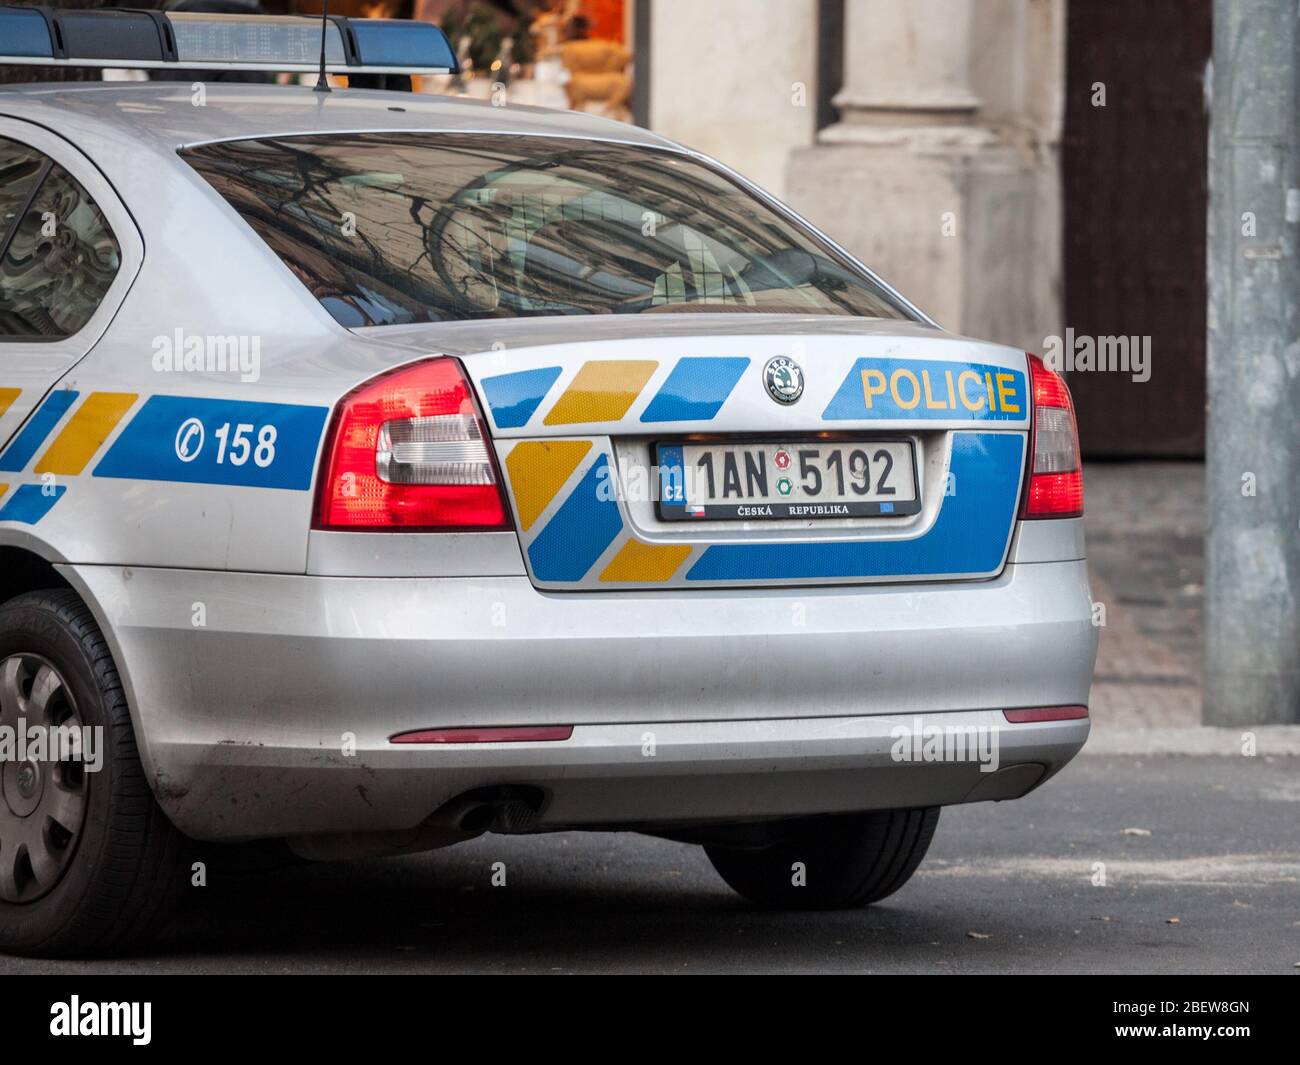 PRAGA, REPUBBLICA CECA - 31 OTTOBRE 2019: Auto della polizia ceca nelle strade di Praga. Chiamata anche Policie Ceske Republiky, è la legge principale di applicazione Foto Stock